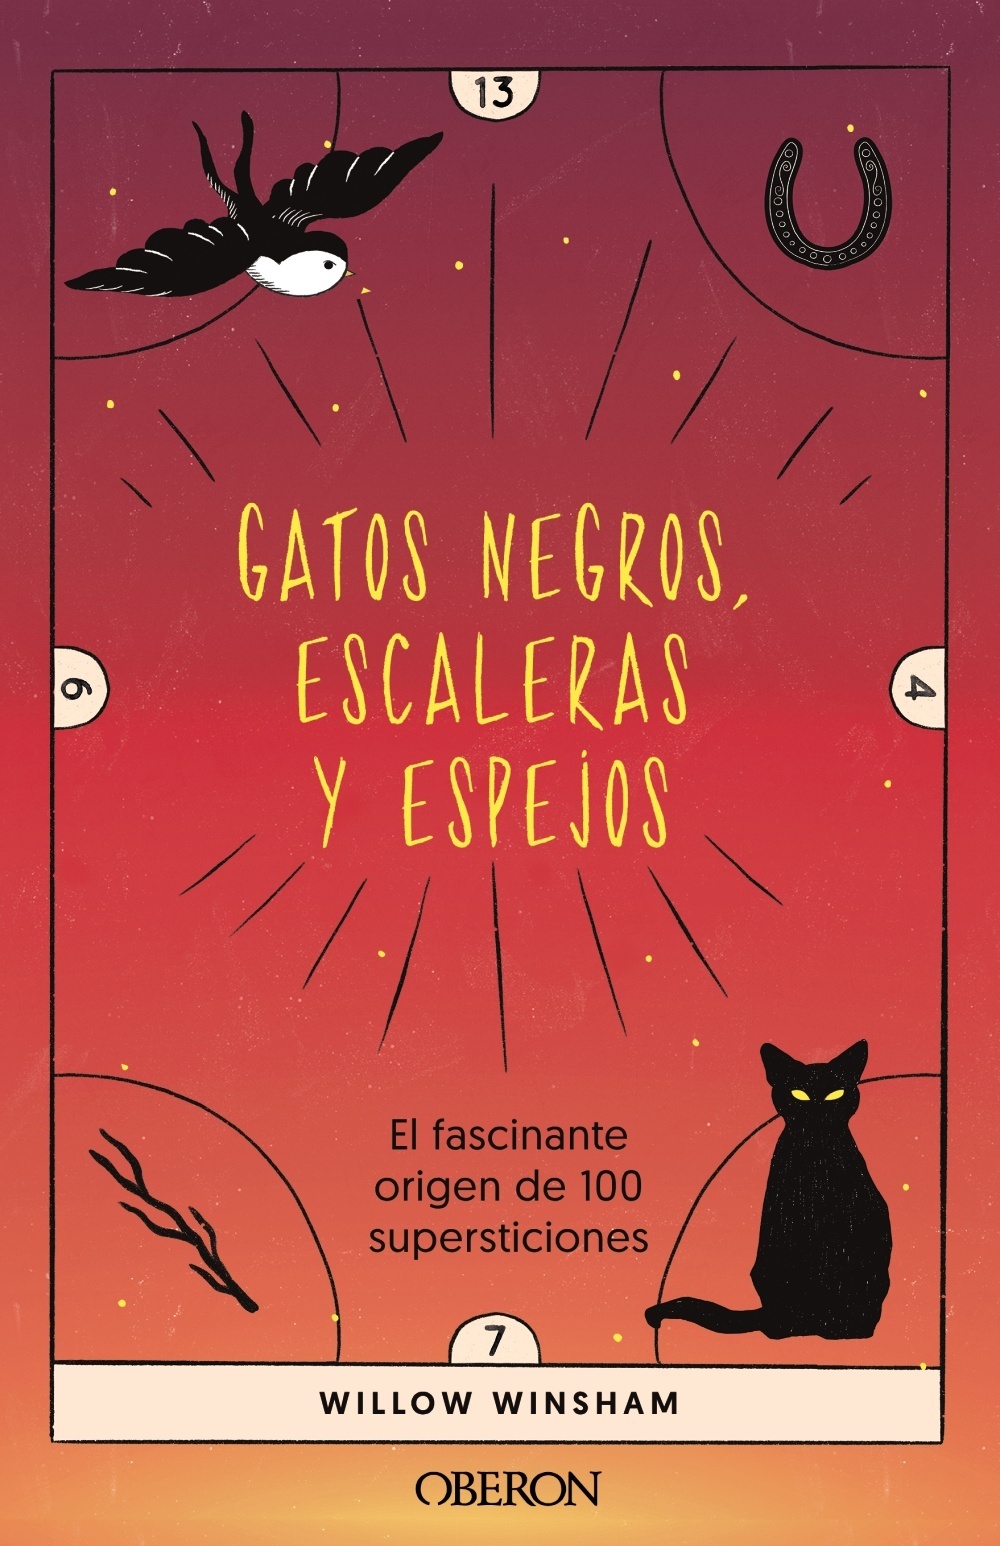 Gatos negros, escaleras y espejos "El fascinante origen de 100 supersticiones". 